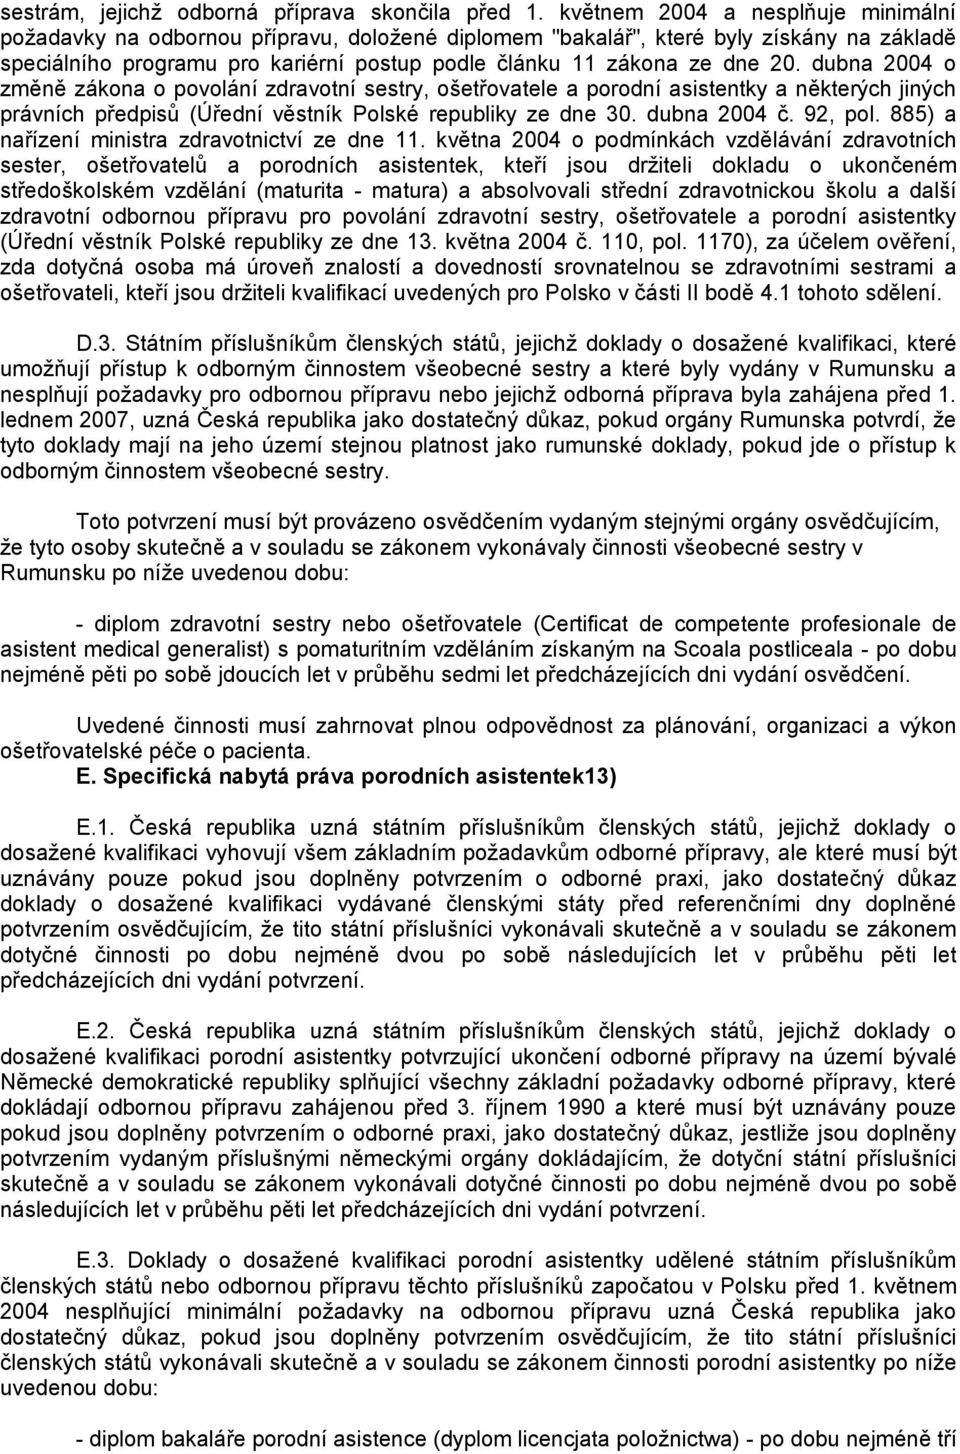 dubna 2004 o změně zákona o povolání zdravotní sestry, ošetřovatele a porodní asistentky a některých jiných právních předpisů (Úřední věstník Polské republiky ze dne 30. dubna 2004 č. 92, pol.